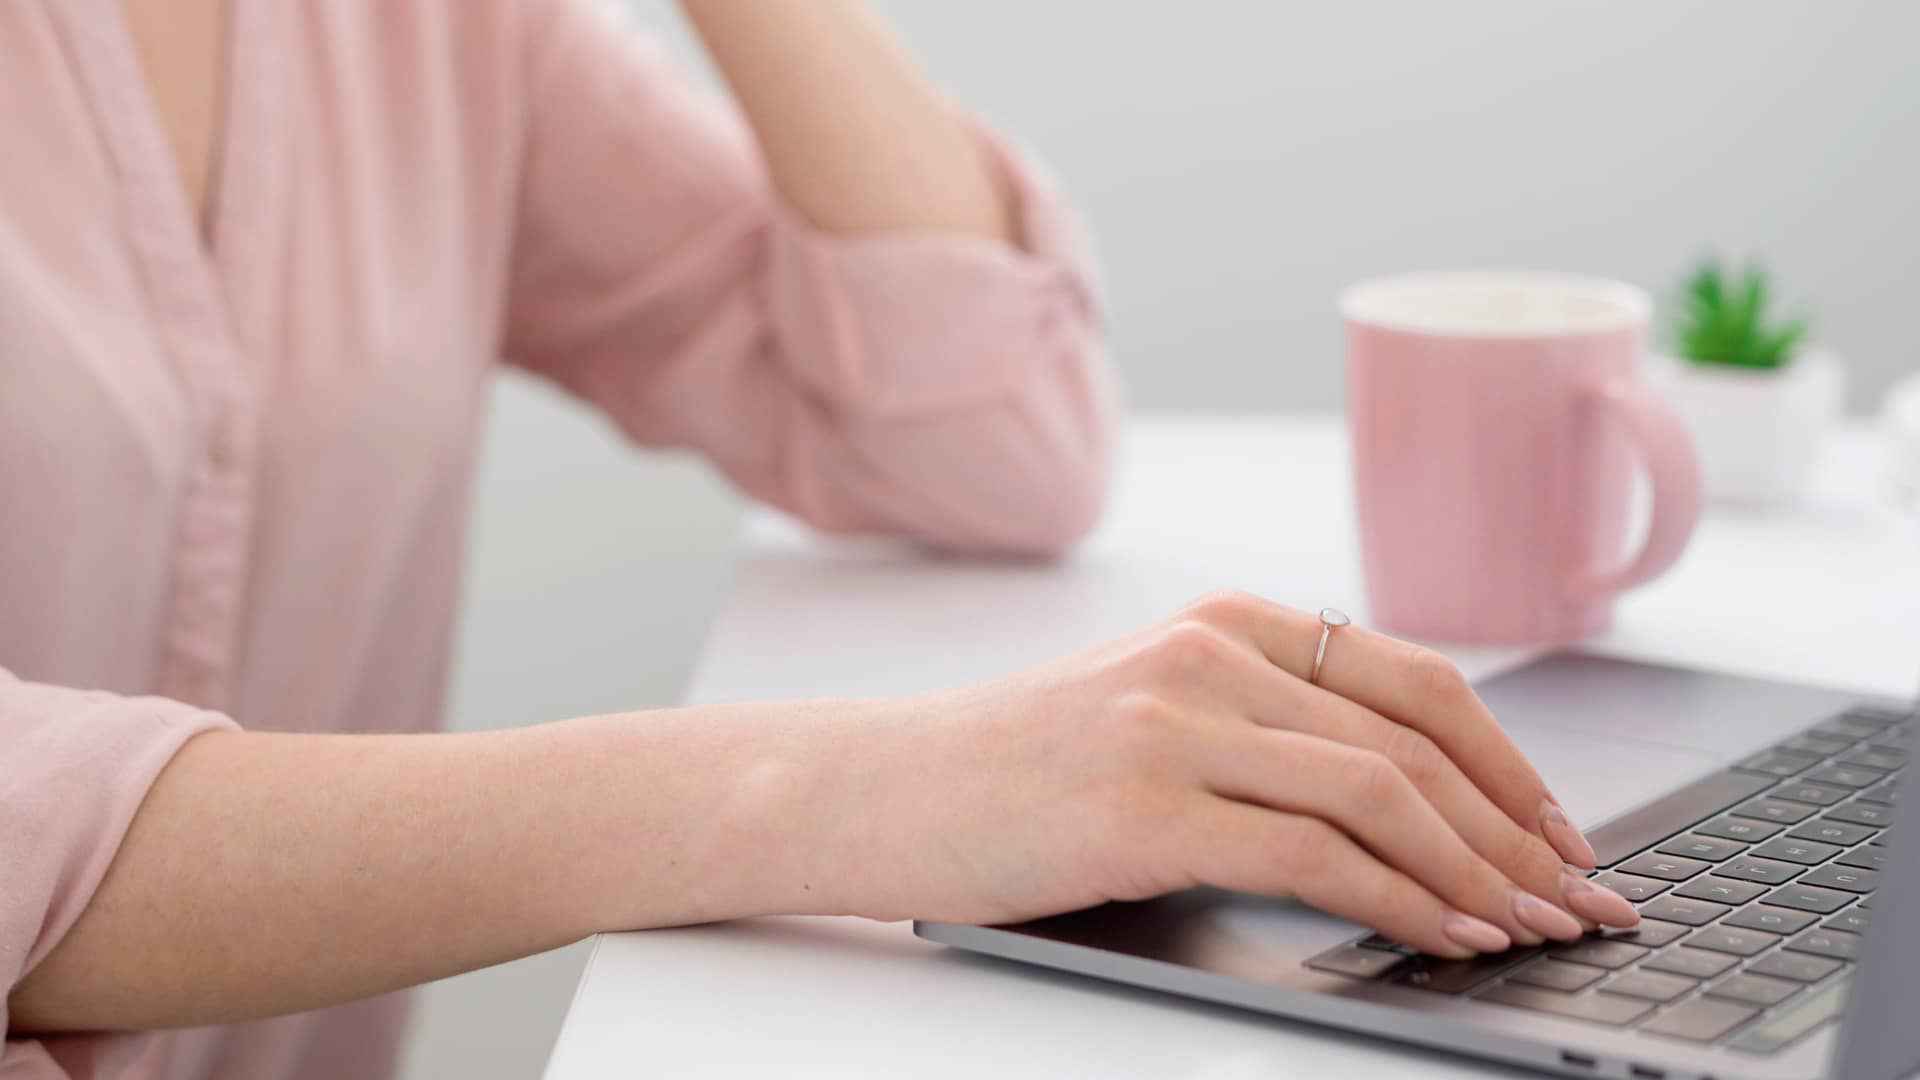 kobieta-pracuje-przy-laptopie-jak-zaczac-prace-jako-wirtualna-asystentka